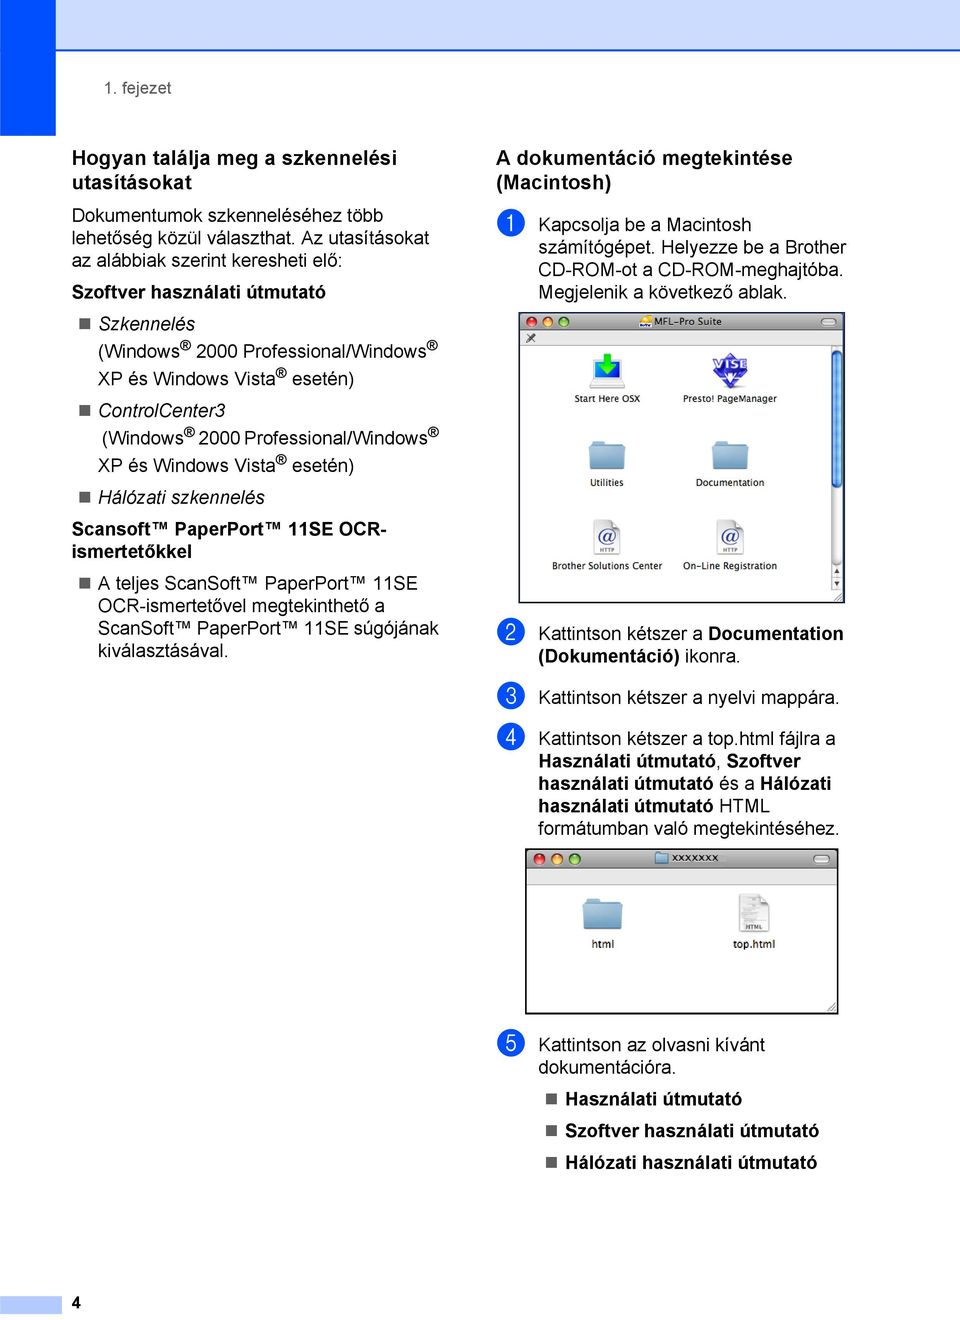 Professional/Windows XP és Windows Vista esetén) Hálózati szkennelés Scansoft PaperPort 11SE OCRismertetőkkel A teljes ScanSoft PaperPort 11SE OCR-ismertetővel megtekinthető a ScanSoft PaperPort 11SE